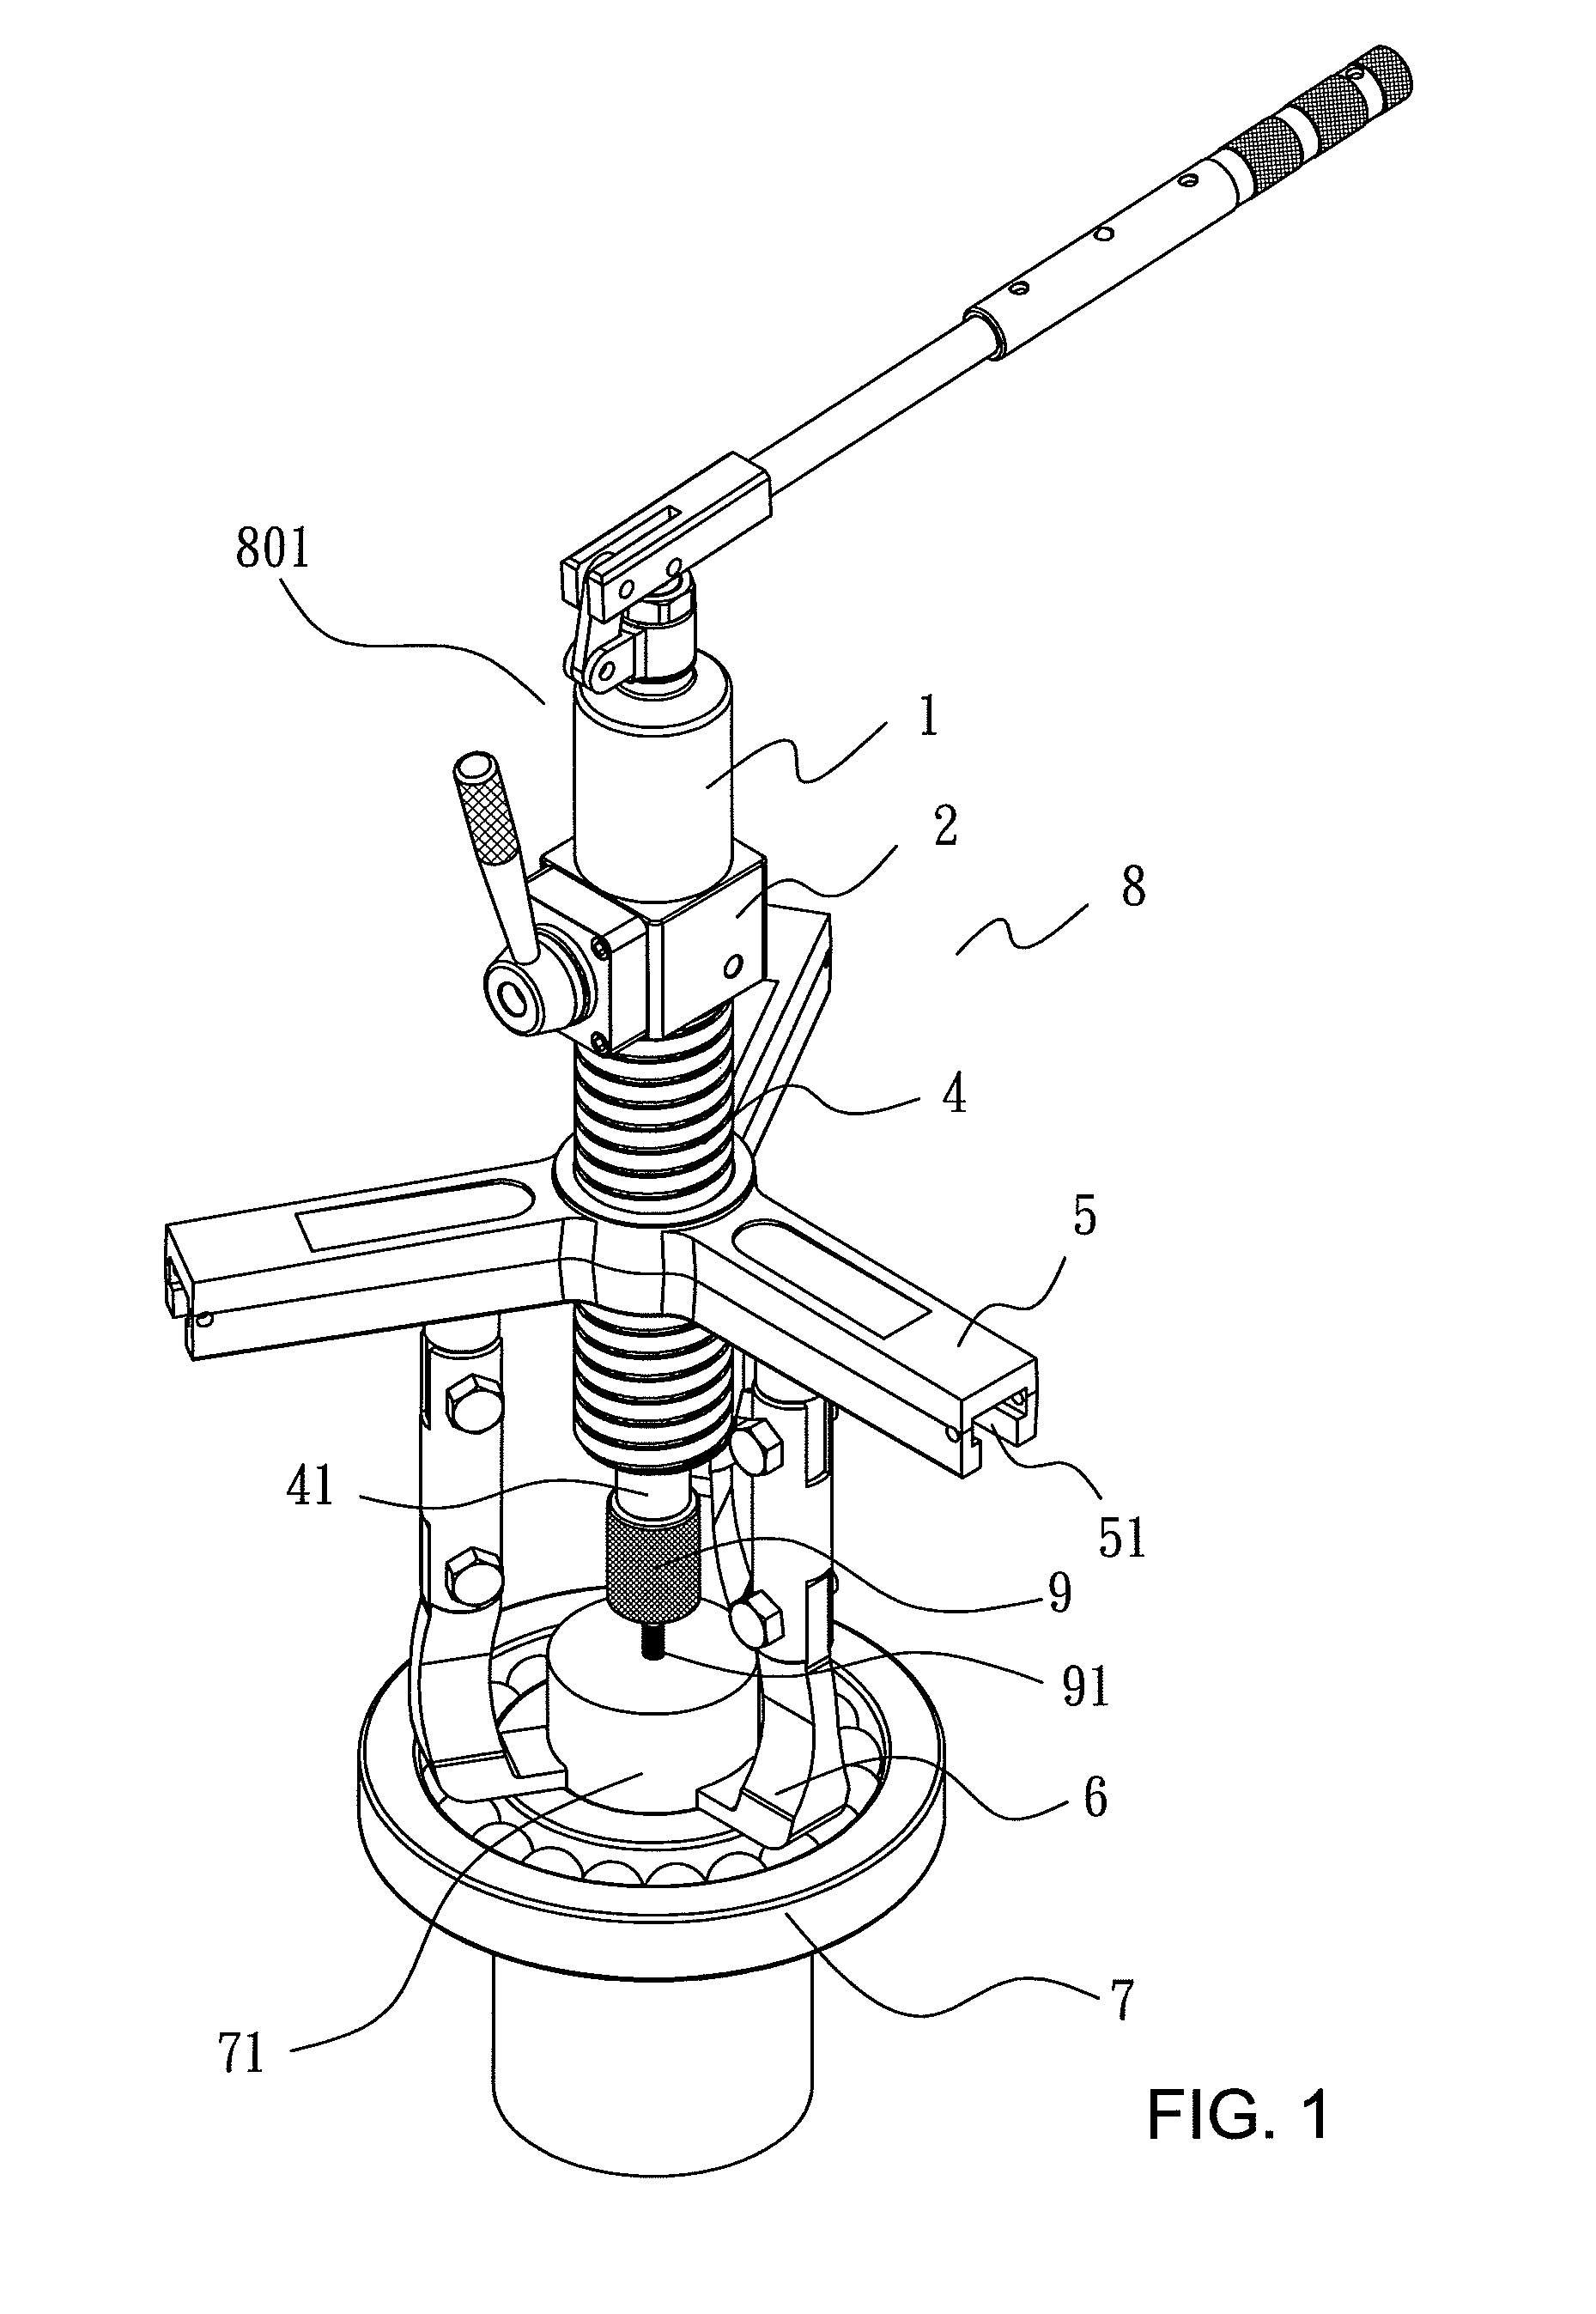 Hydraulic tool